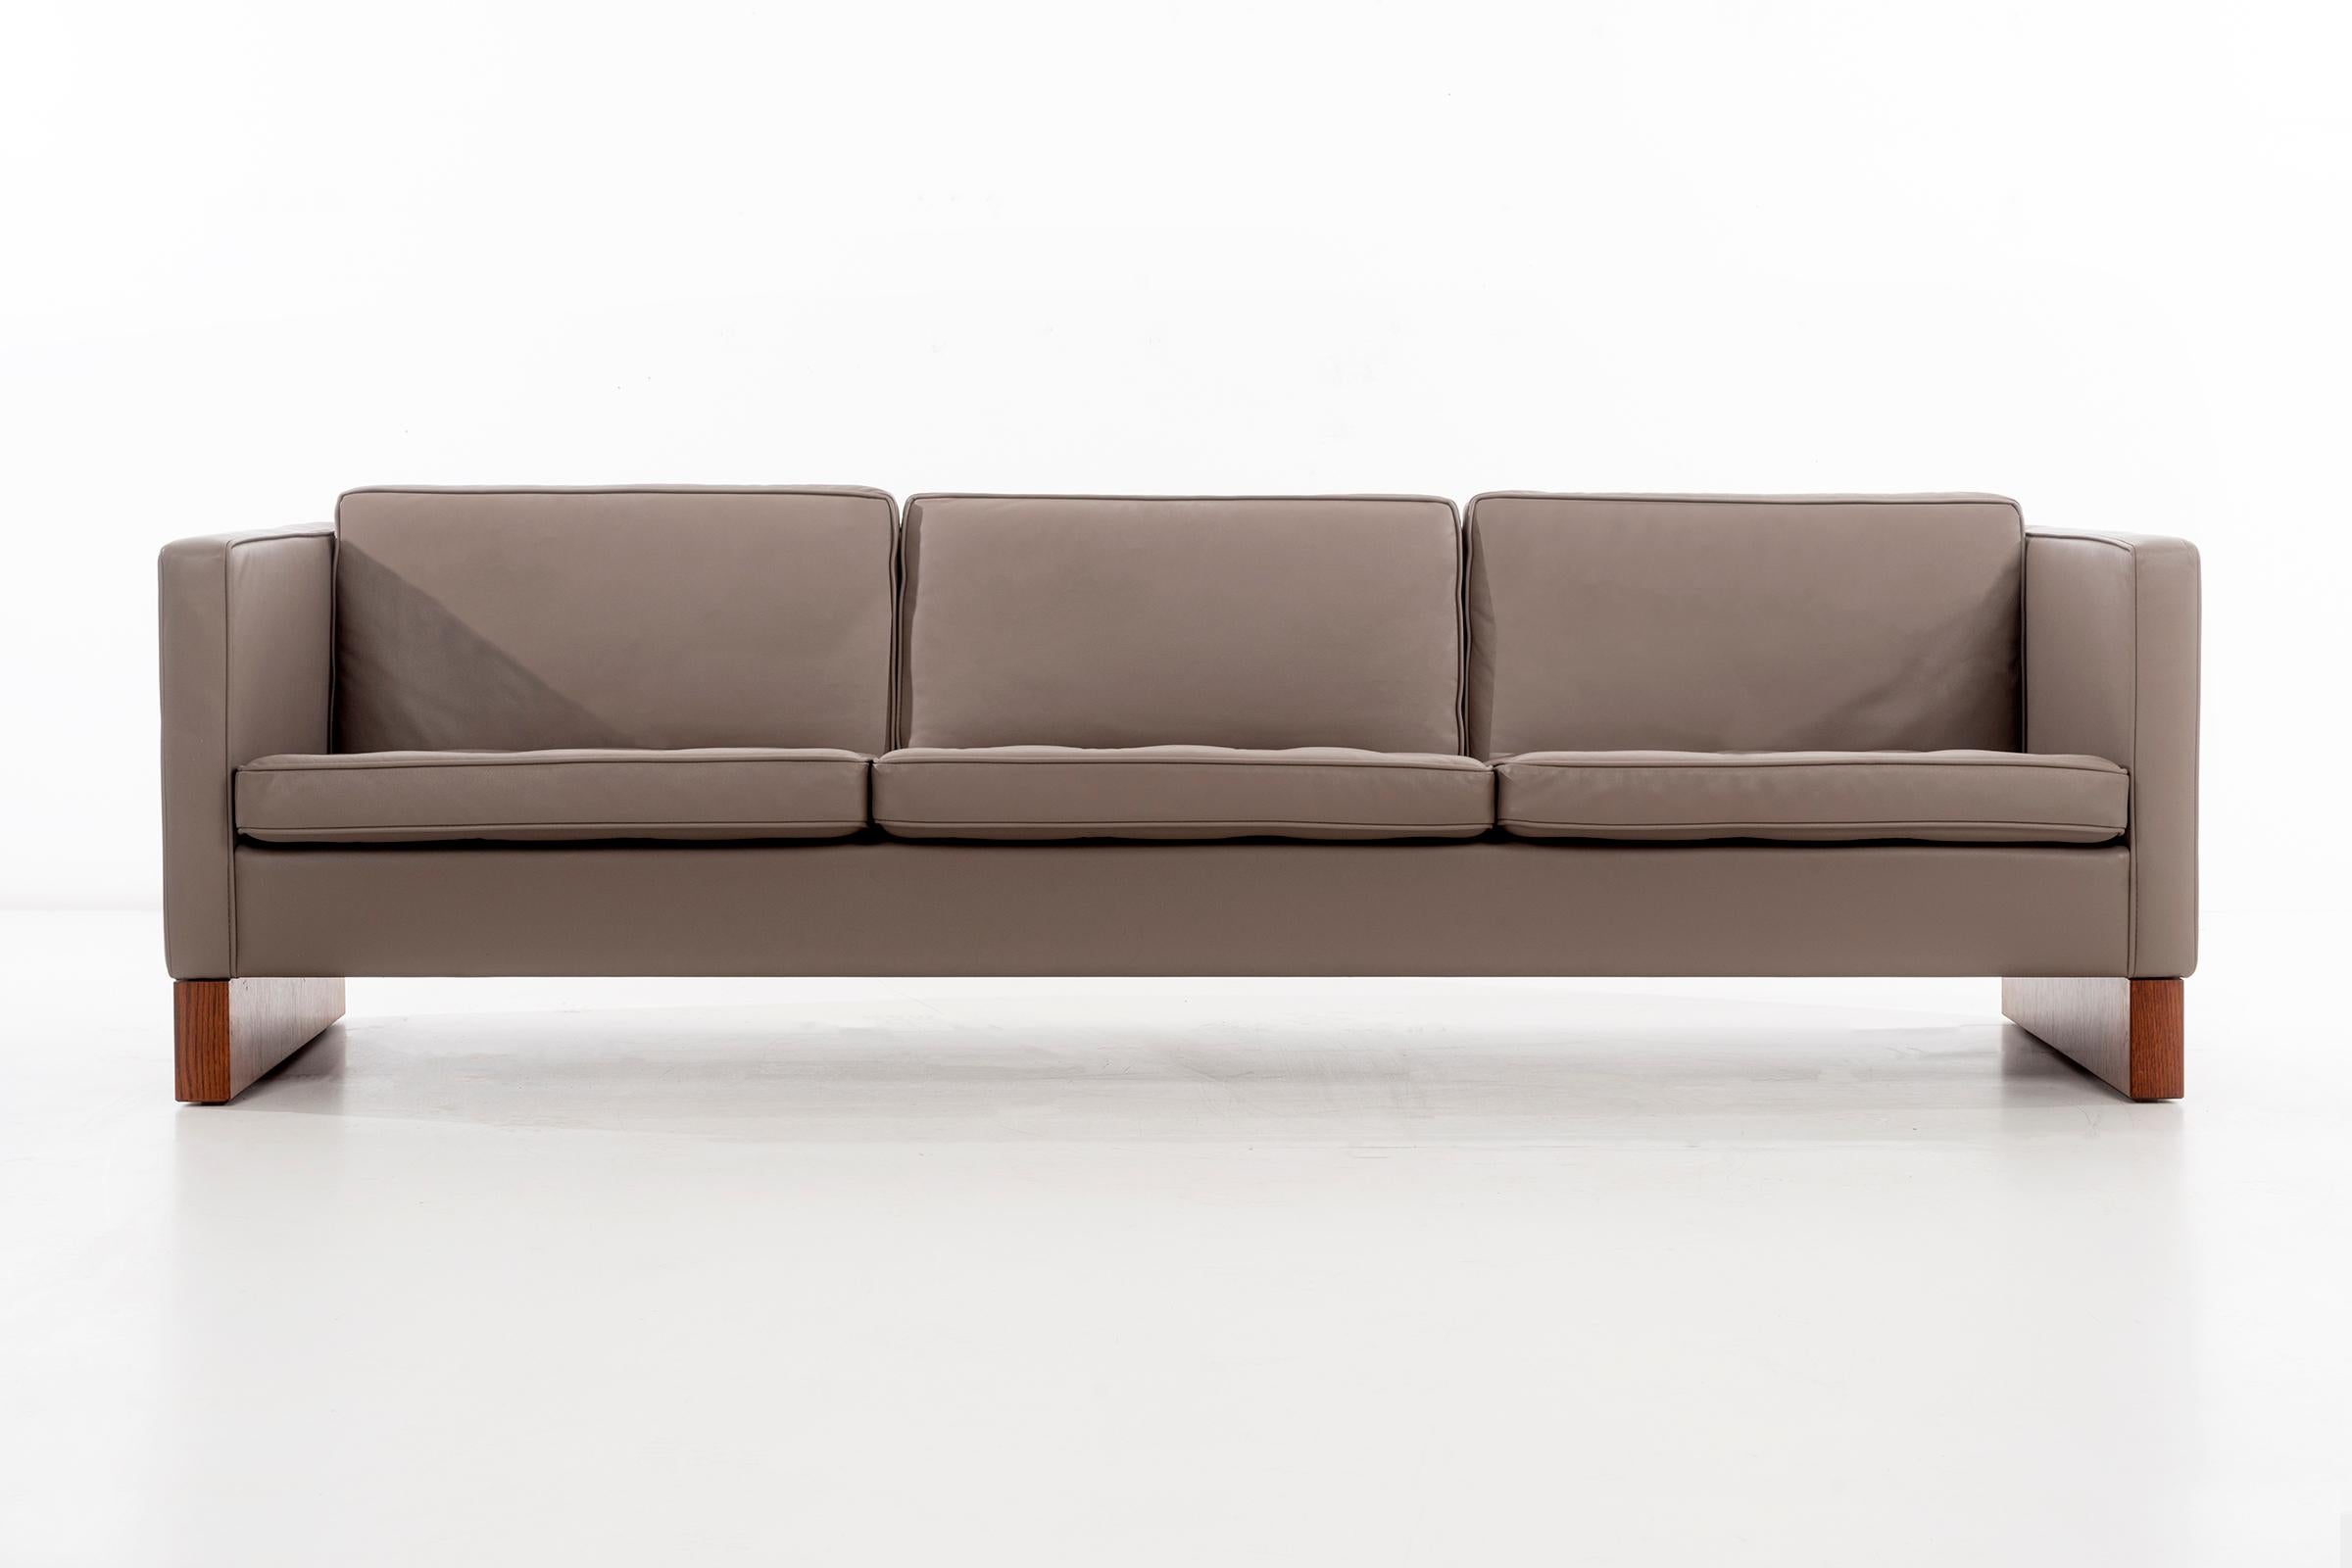 Mies Knoll Production Dreisitzer-Sofa, neu gepolstert mit Spinneybeck-Leder aus anilingefärbten Häuten, getuftete Sitzlehnen mit Daunen- und Schaumstofffüllung im Inneren.
Sockelstützen aus Palisanderholz.
Dieses Sofadesign stammt aus einem